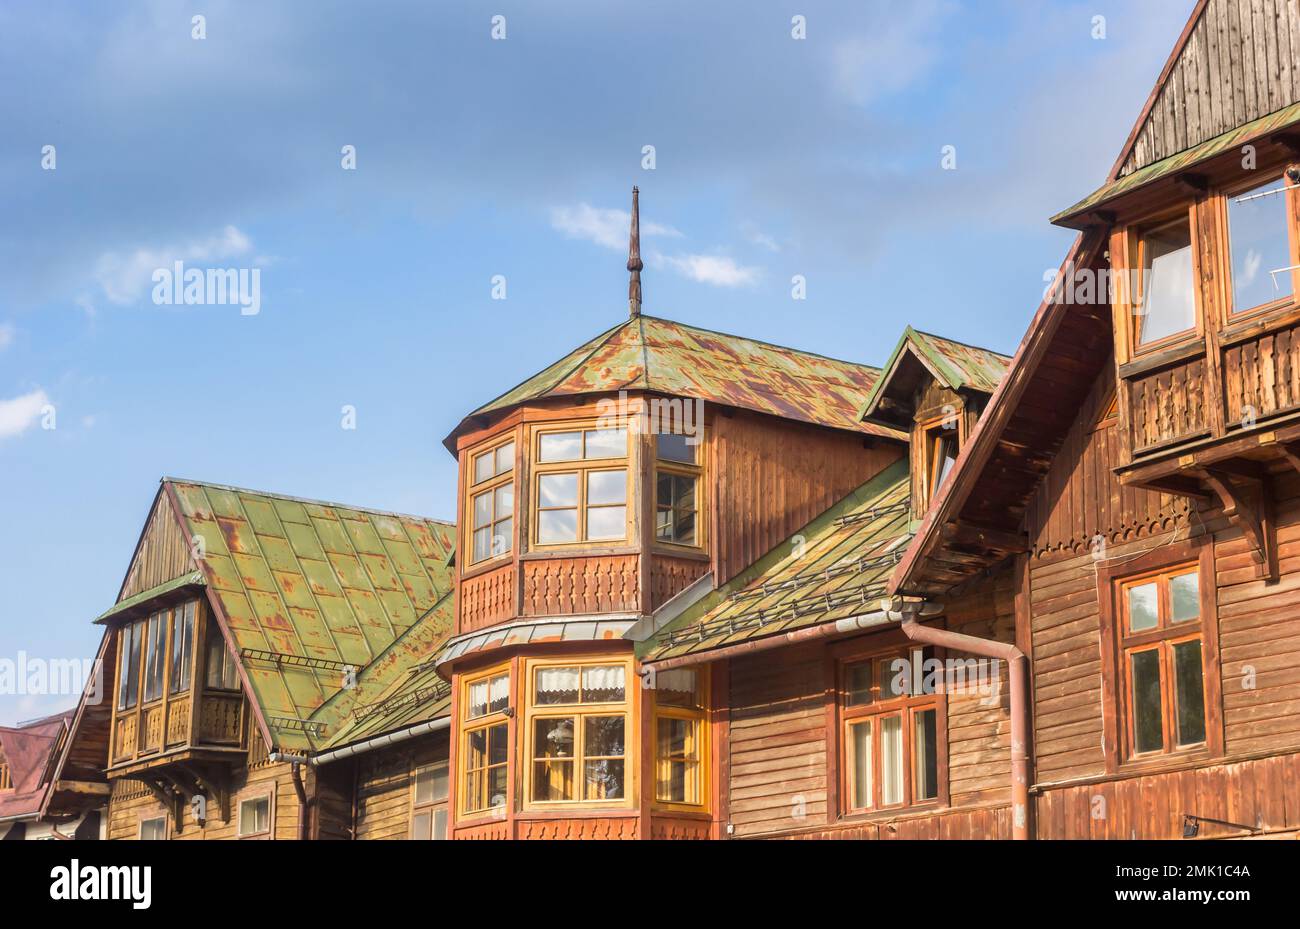 Architecture traditionnelle en bois dans le centre du village historique de Zakopane, Pologne Banque D'Images